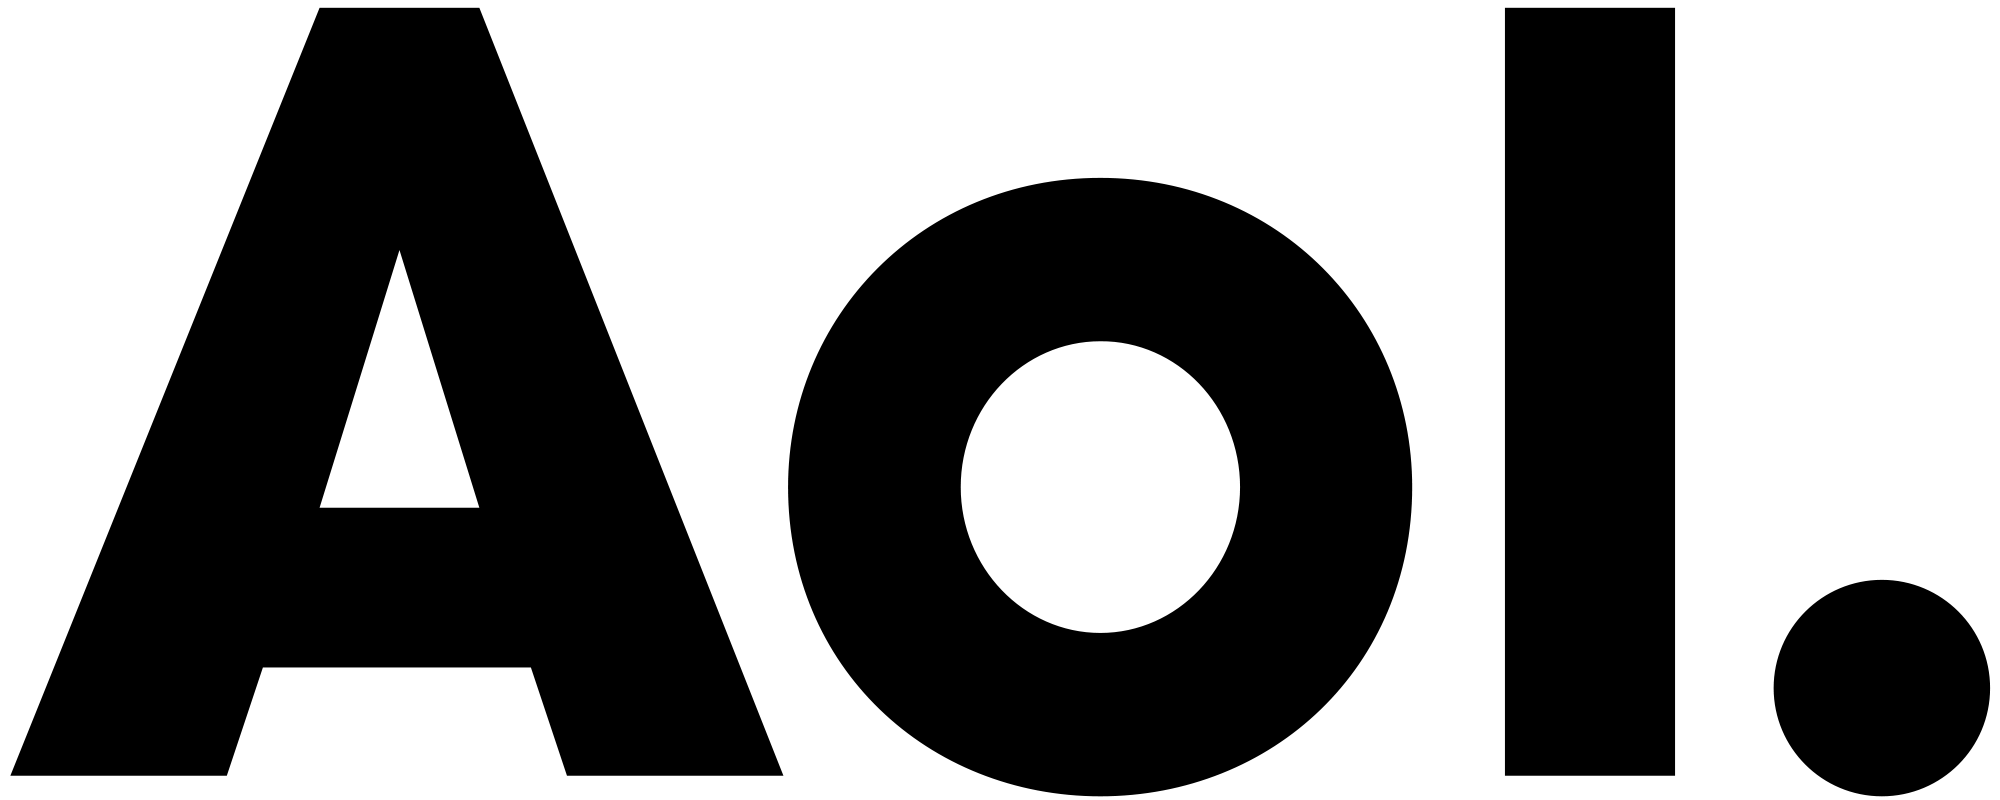 2000px-AOL_logo